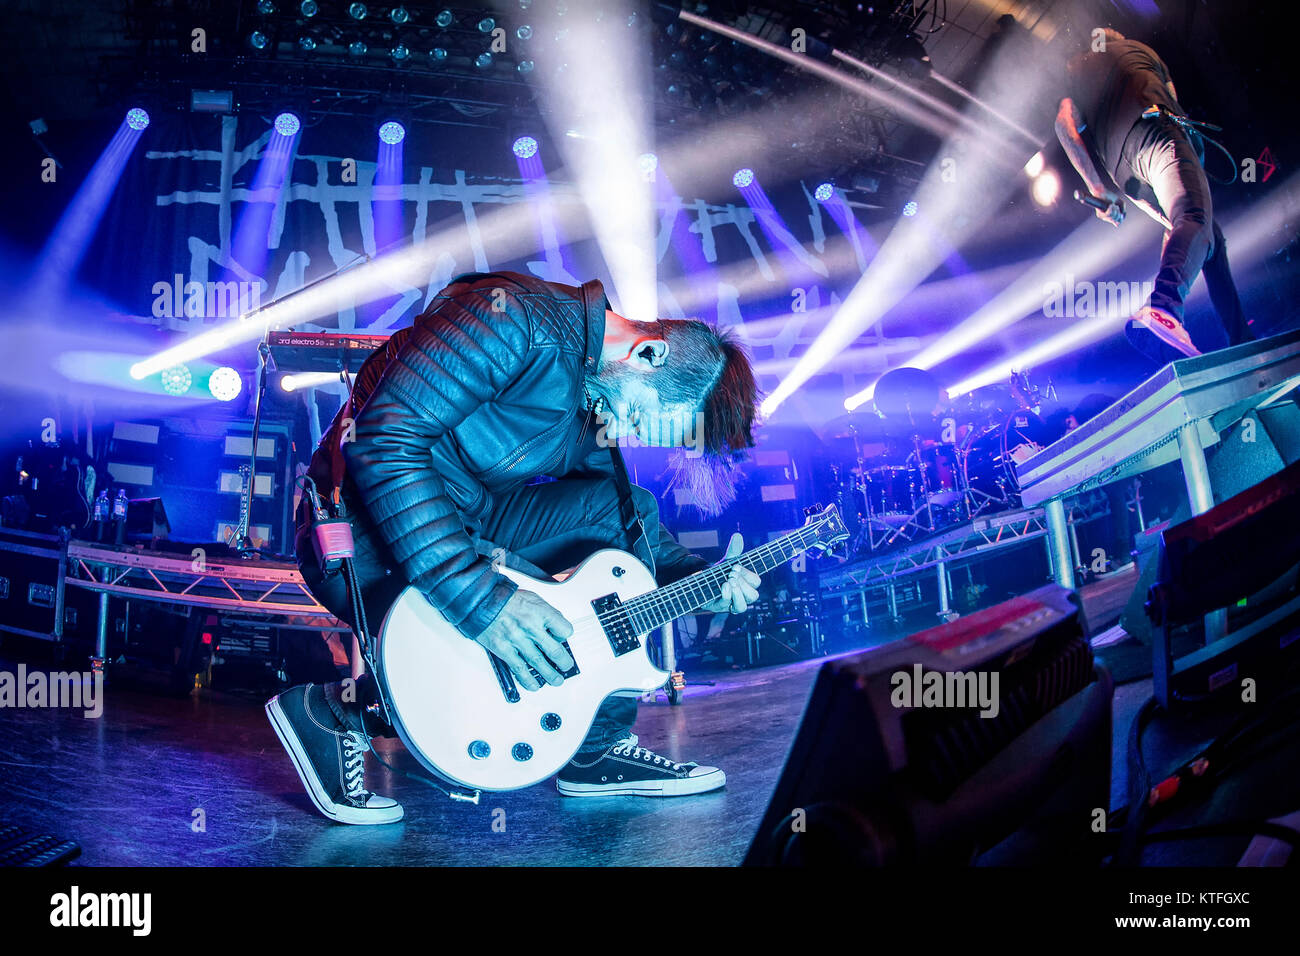 Norvège, Oslo - 23 octobre, 2017. Le groupe de metal américain de rock Papa Roach effectue un concert live de la Rockefeller à Oslo. Ici le guitariste Jerry Horton est vu sur scène. (Photo crédit : Gonzales Photo - Terje Dokken). Banque D'Images